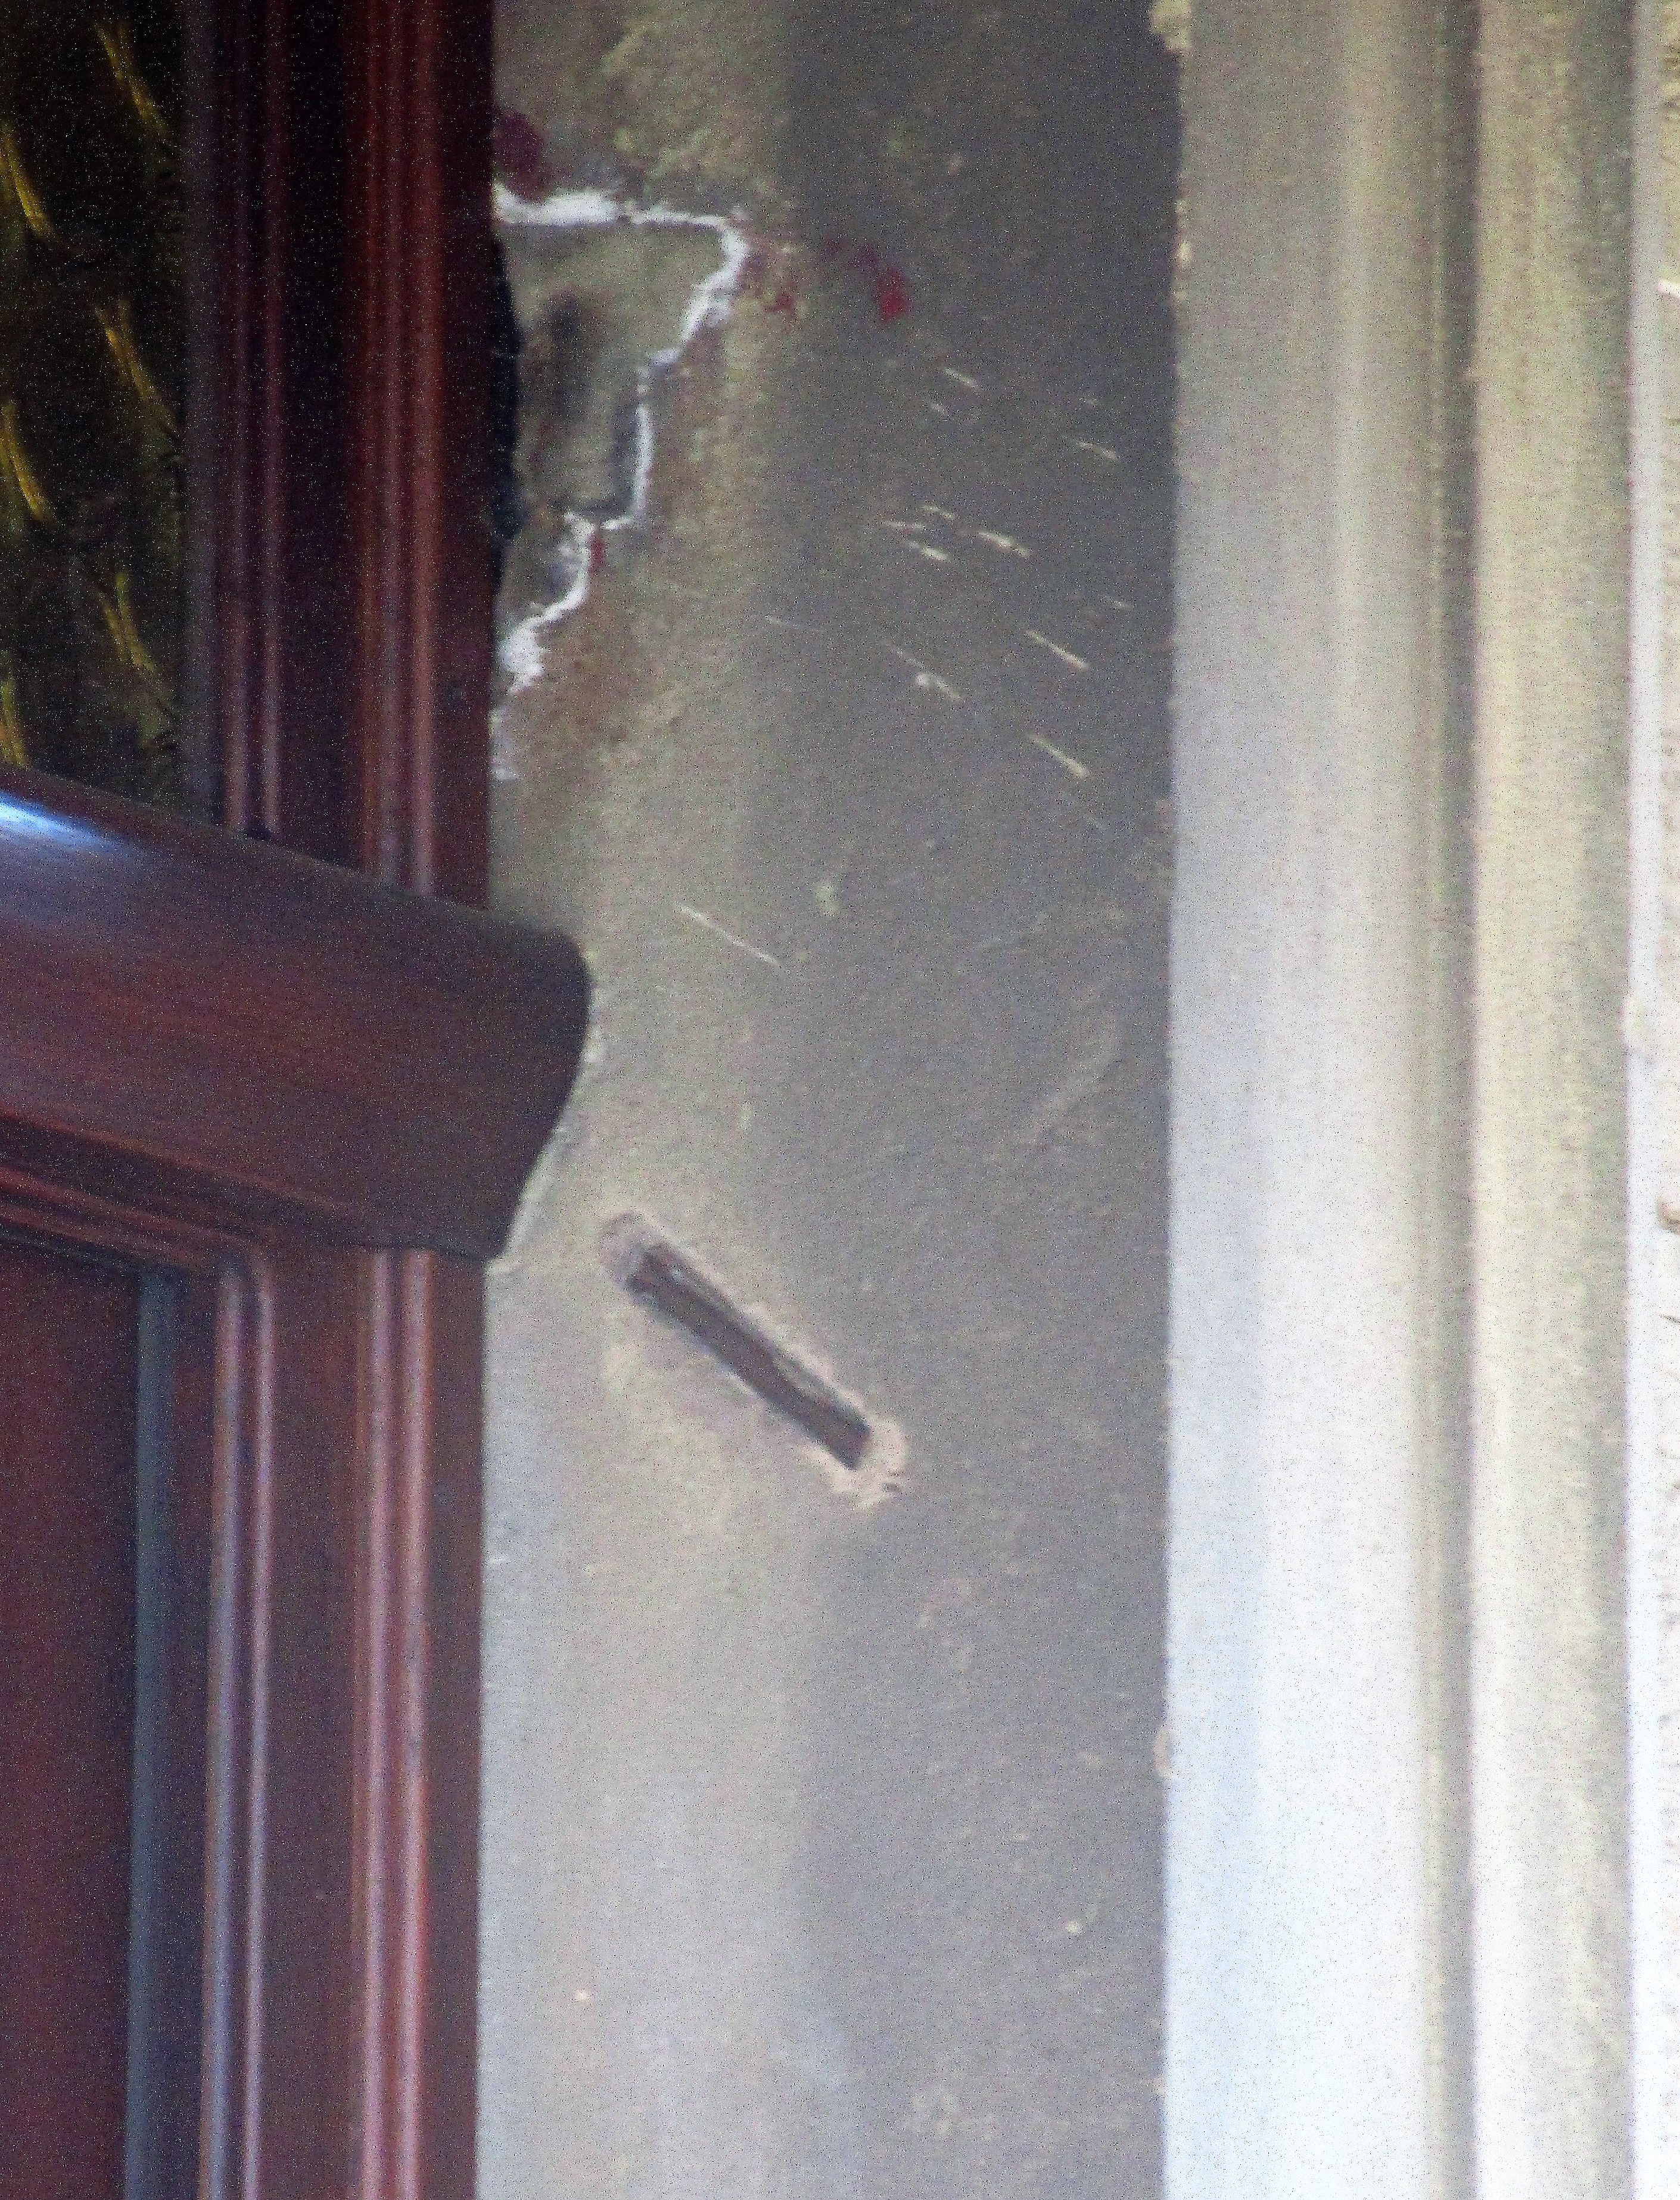 Die schräge Kerbe für die Mesusa zeichnet sich noch deutlich im steinernen Türsturz ab.